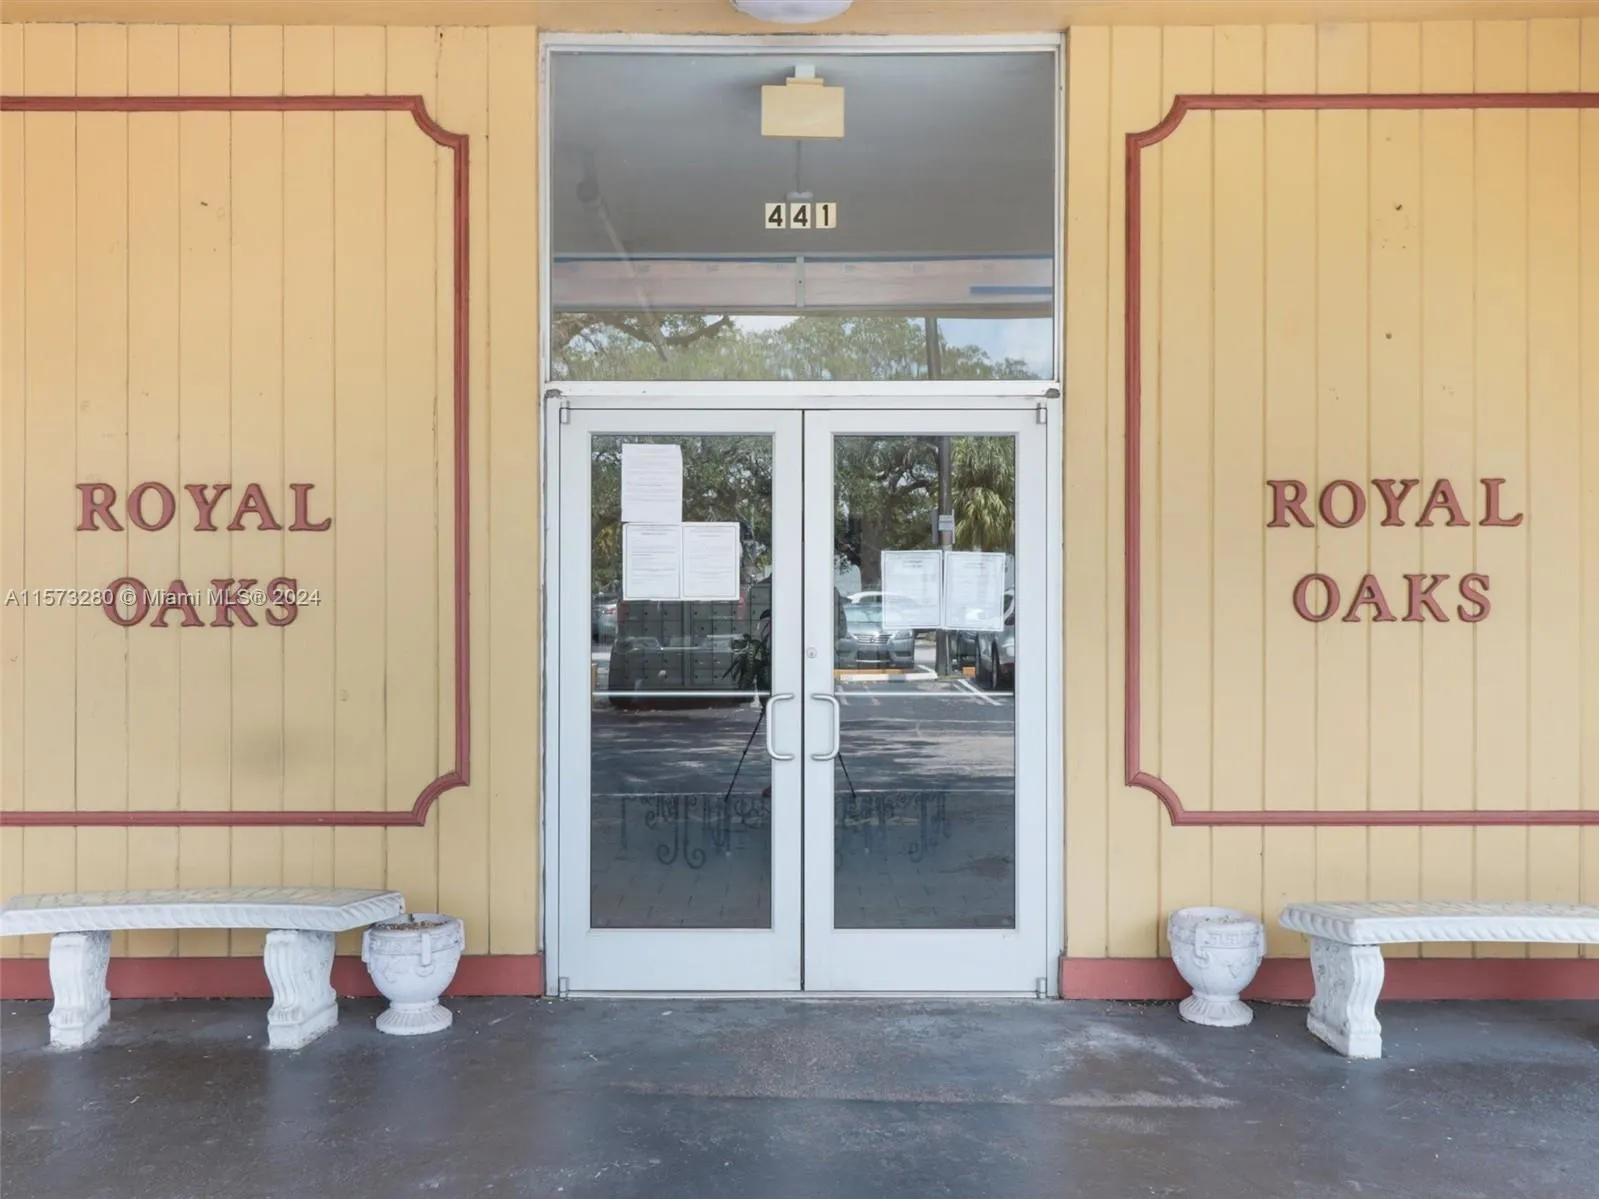 The Royal Oaks Condos